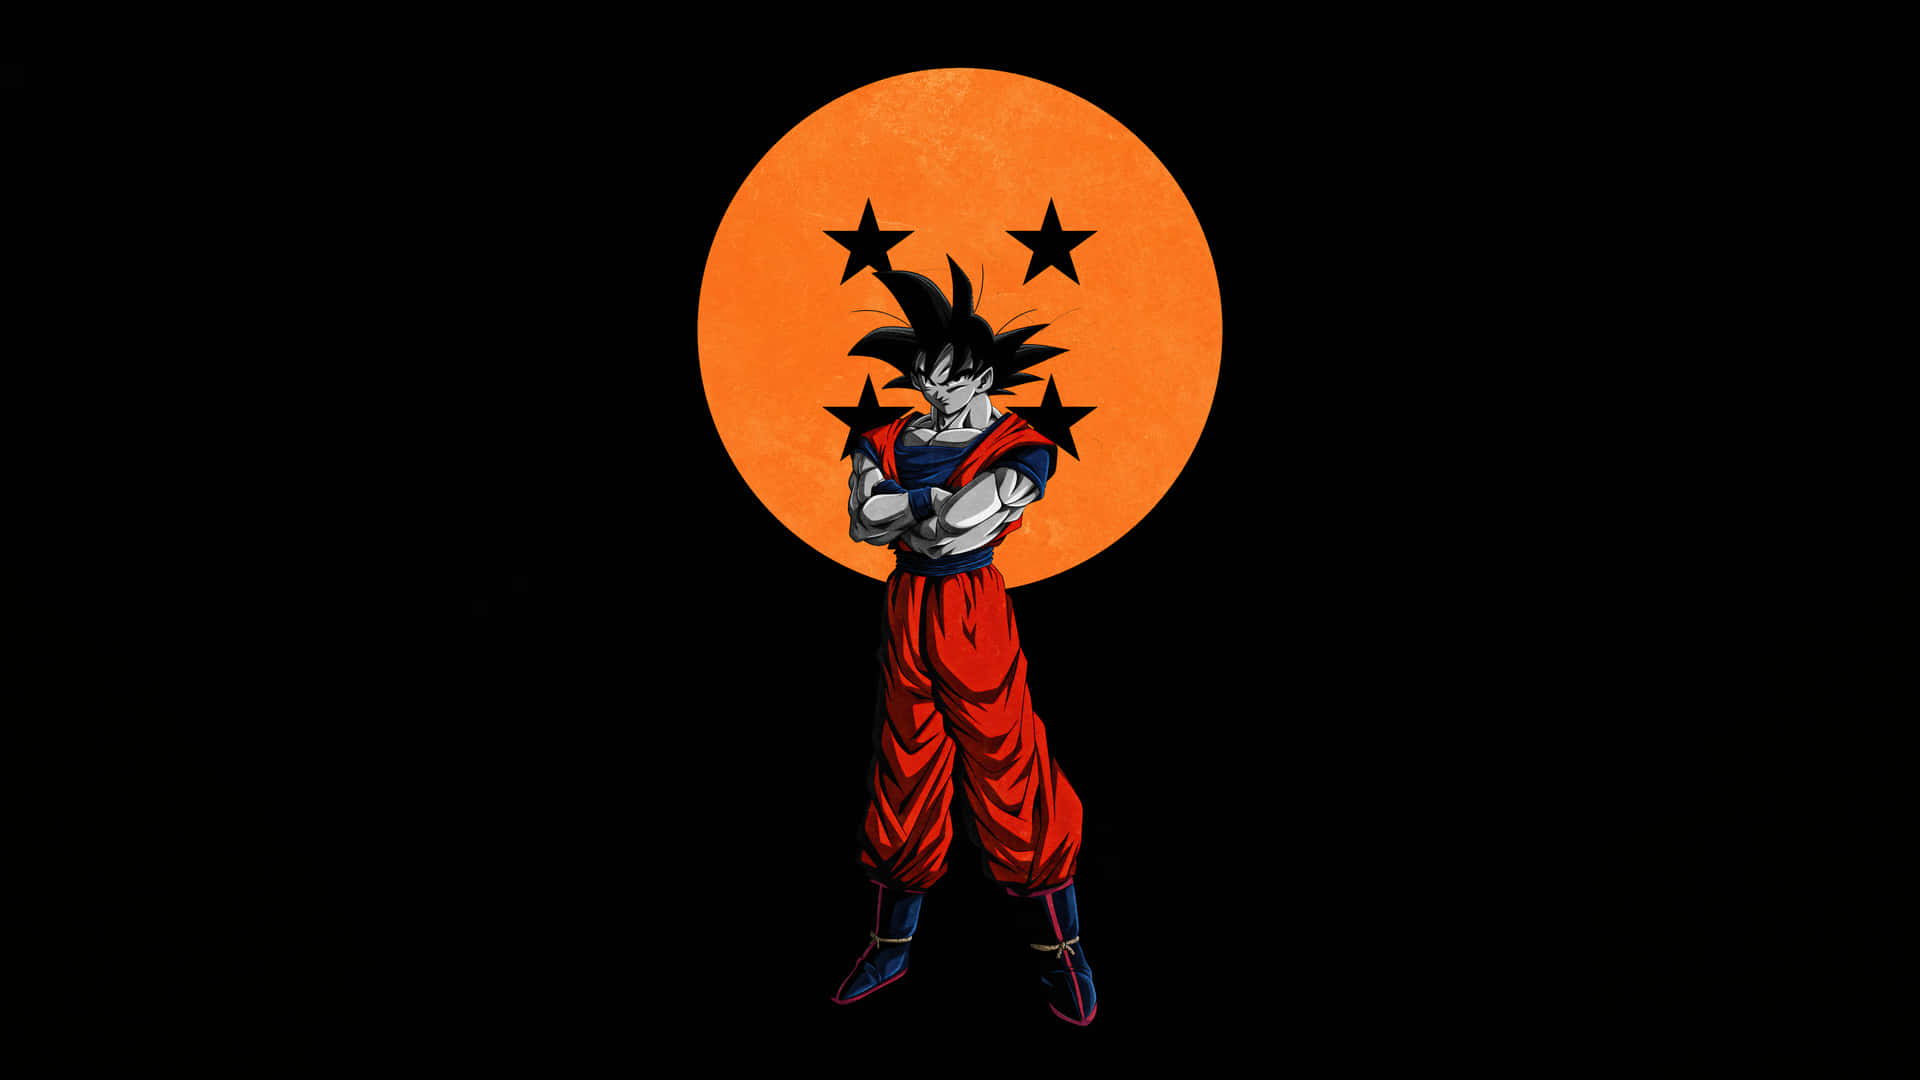 Imagemvermelha Do Goku De Dragon Ball Z.